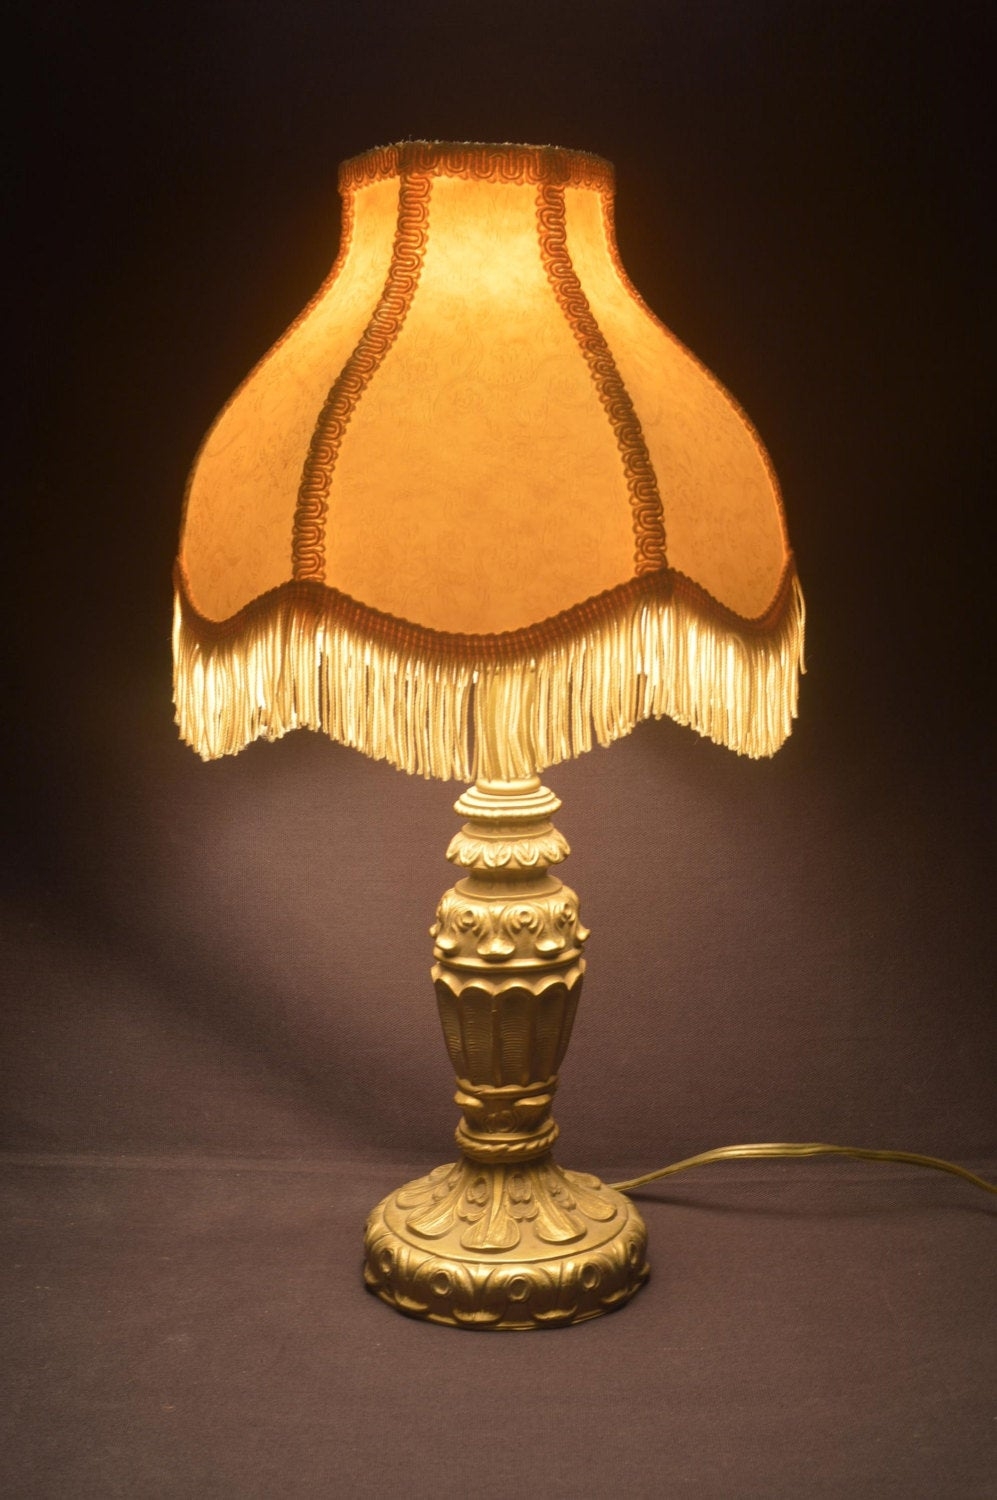 Antique cast metal table lamp